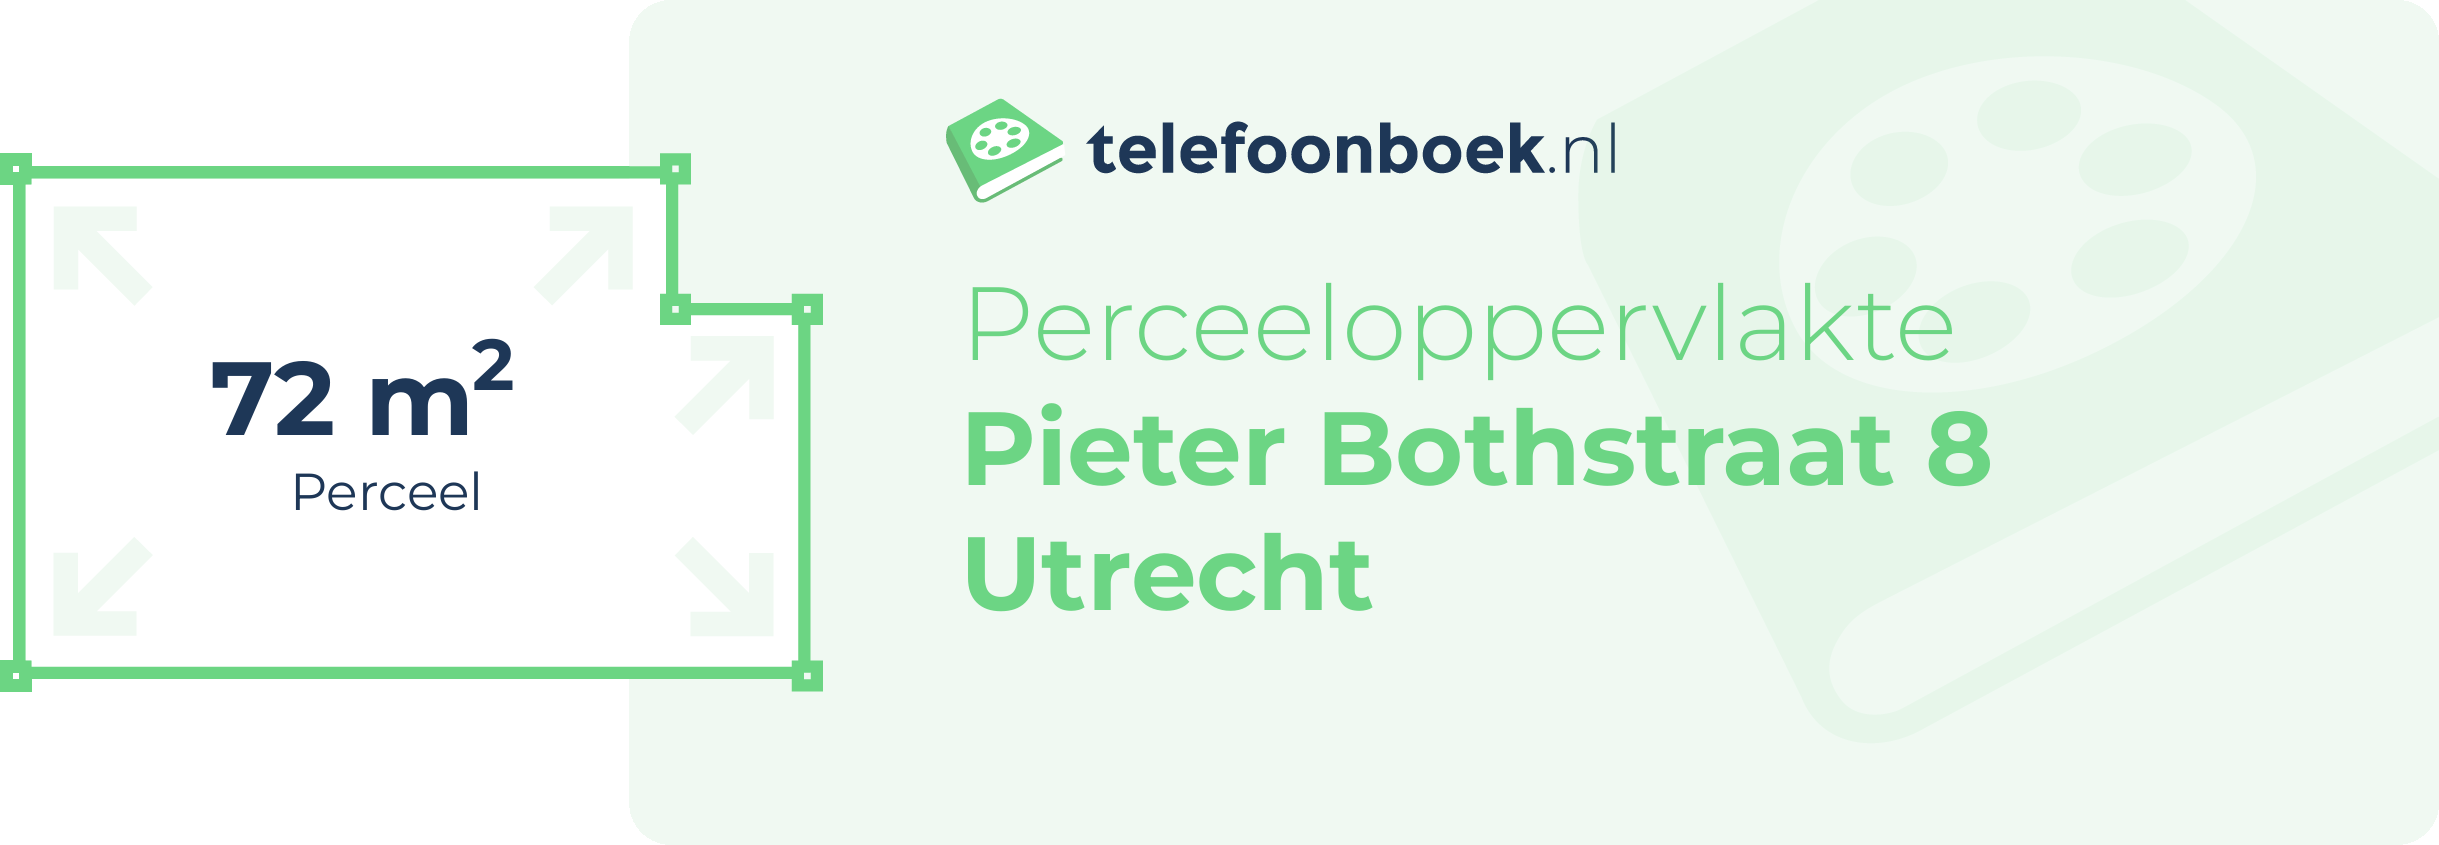 Perceeloppervlakte Pieter Bothstraat 8 Utrecht